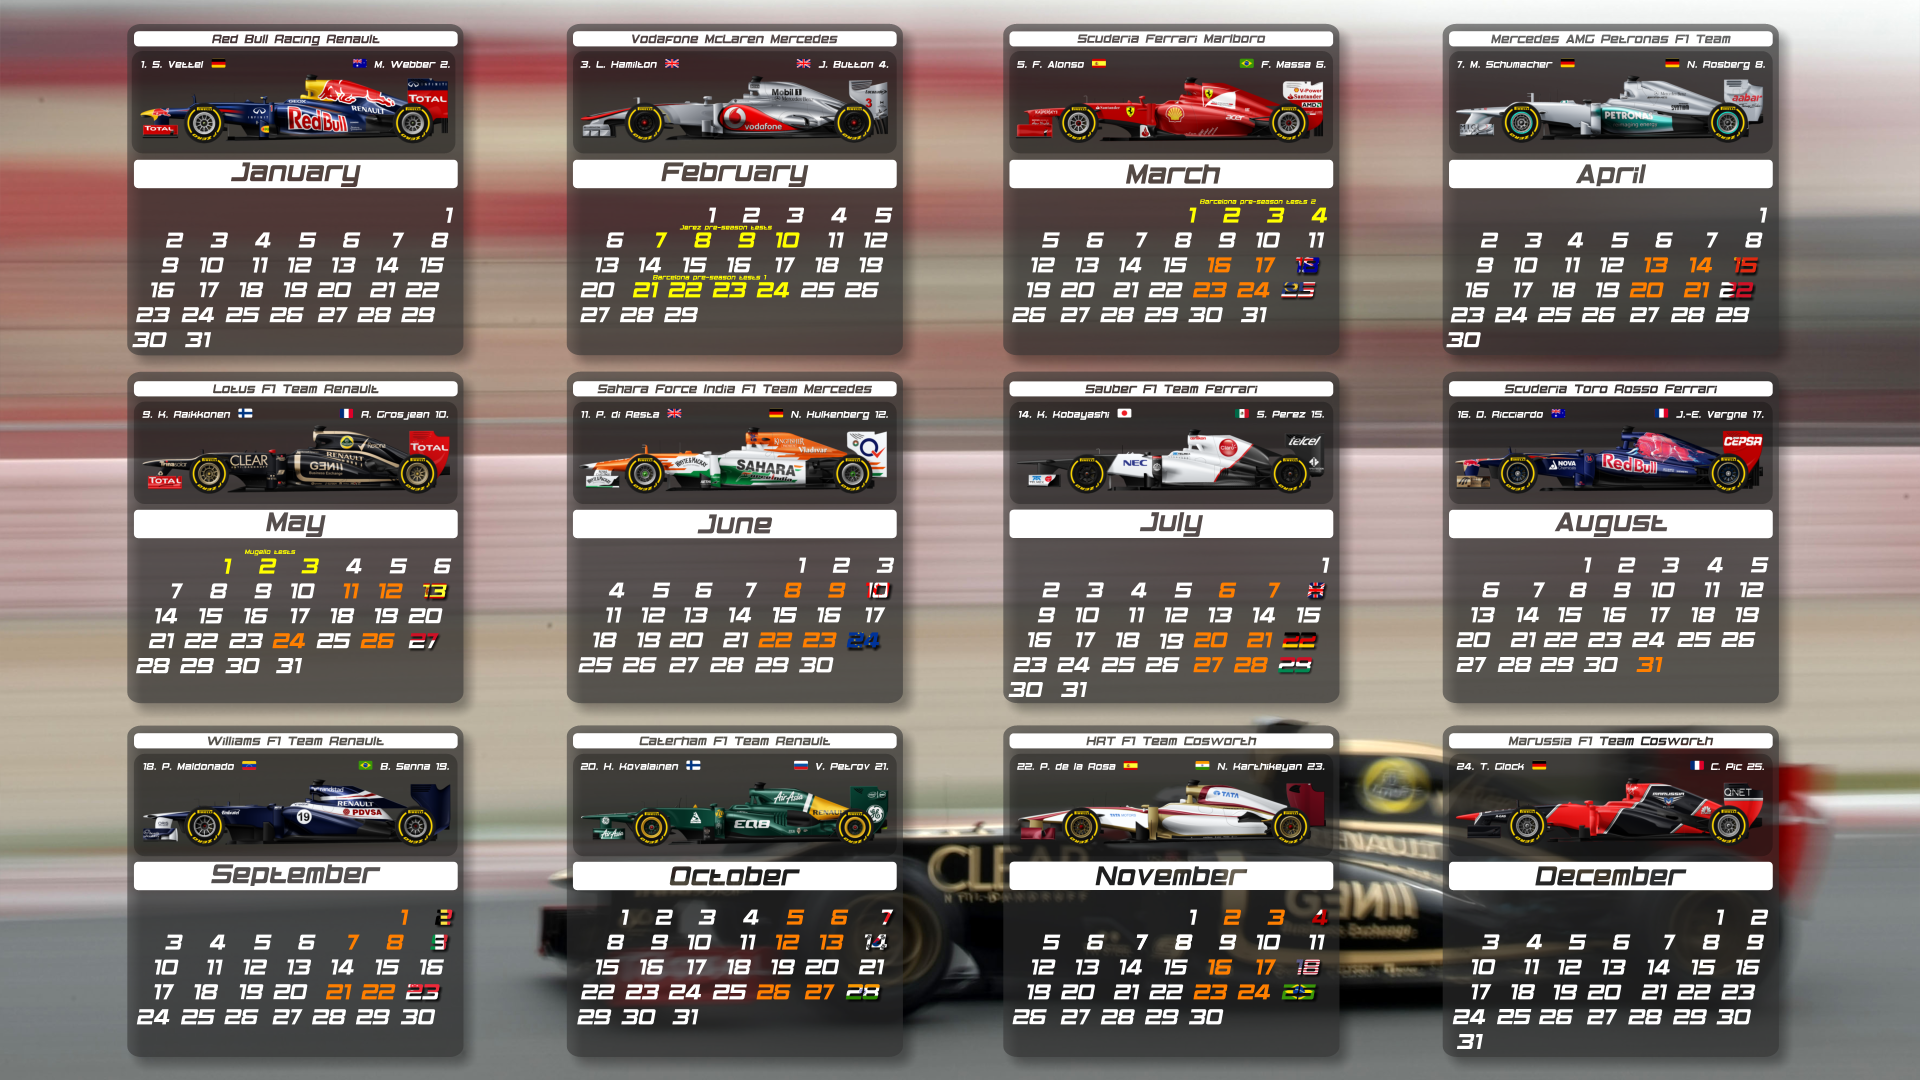 F1 2012 calendar by pieczaro on DeviantArt